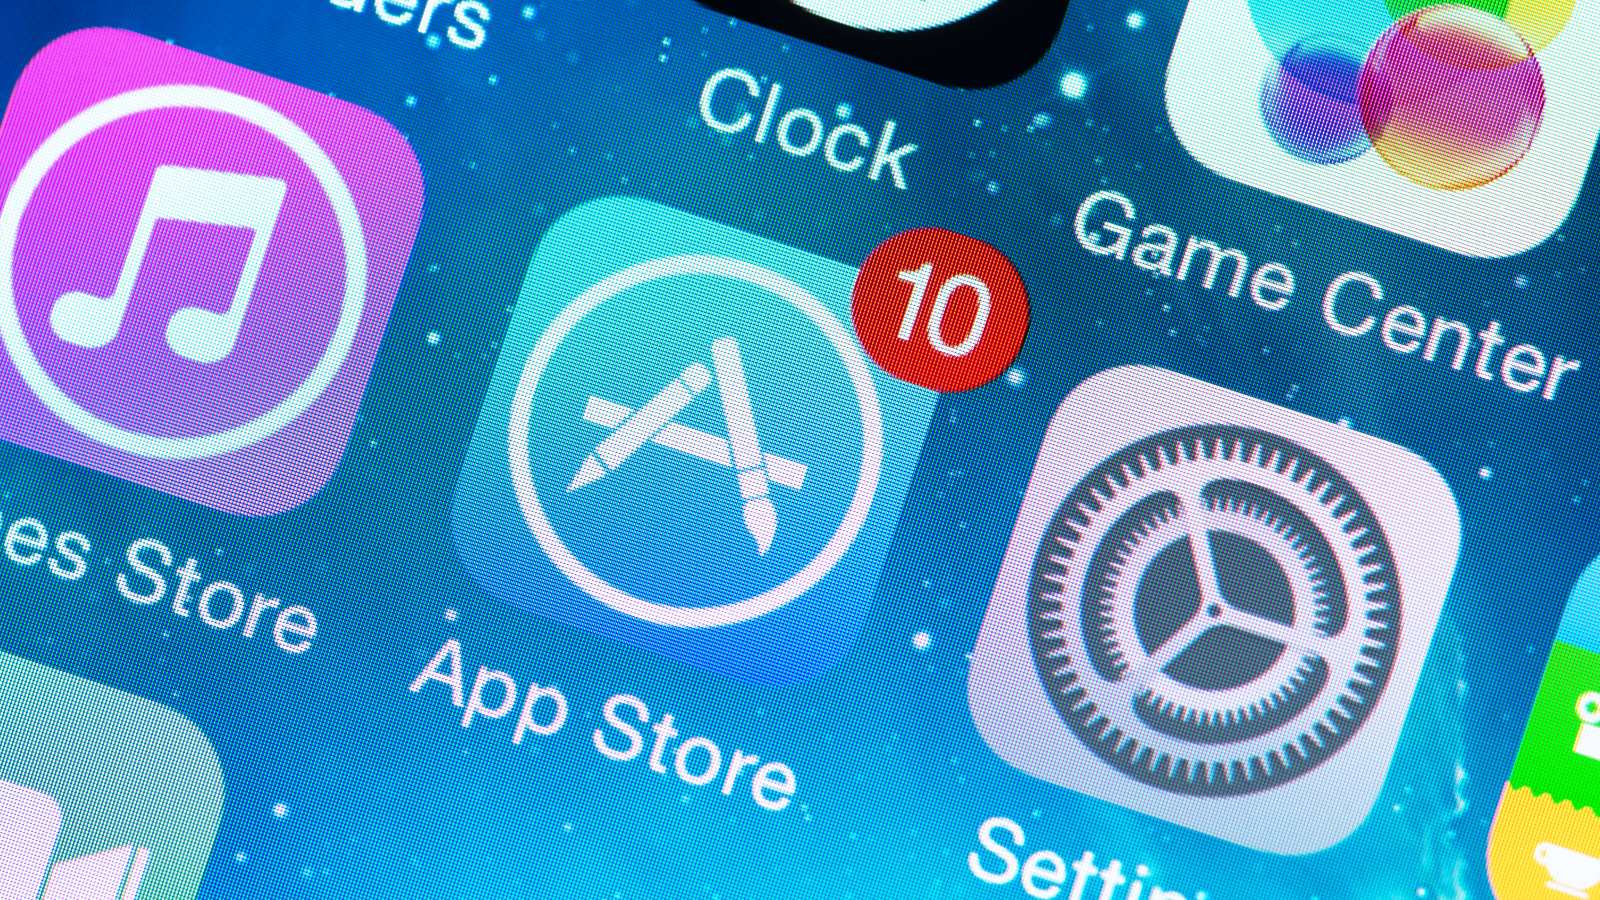 Цены на приложения и игры в российском App Store будут увеличены